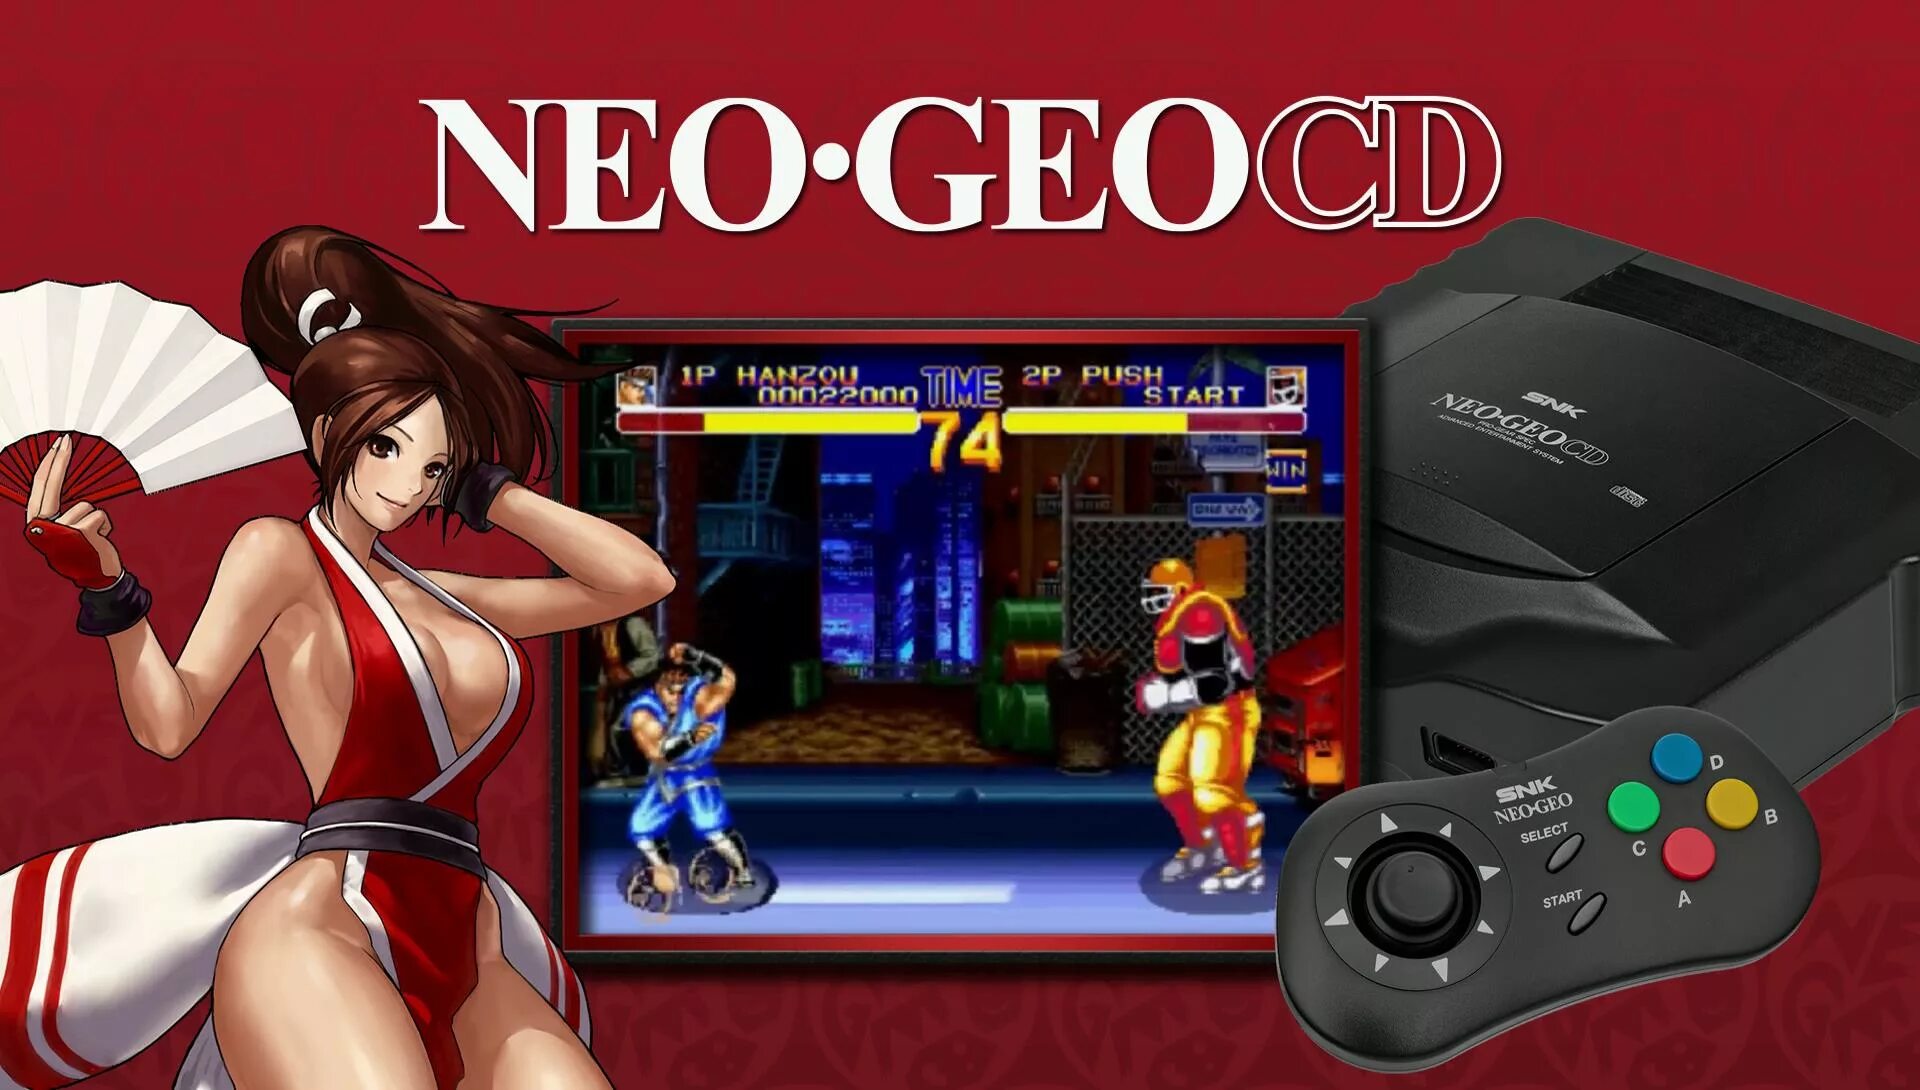 SNK Neo geo. Neo geo CD. Neo geo игры. Файтинги Neo-geo. Ardor gaming shell